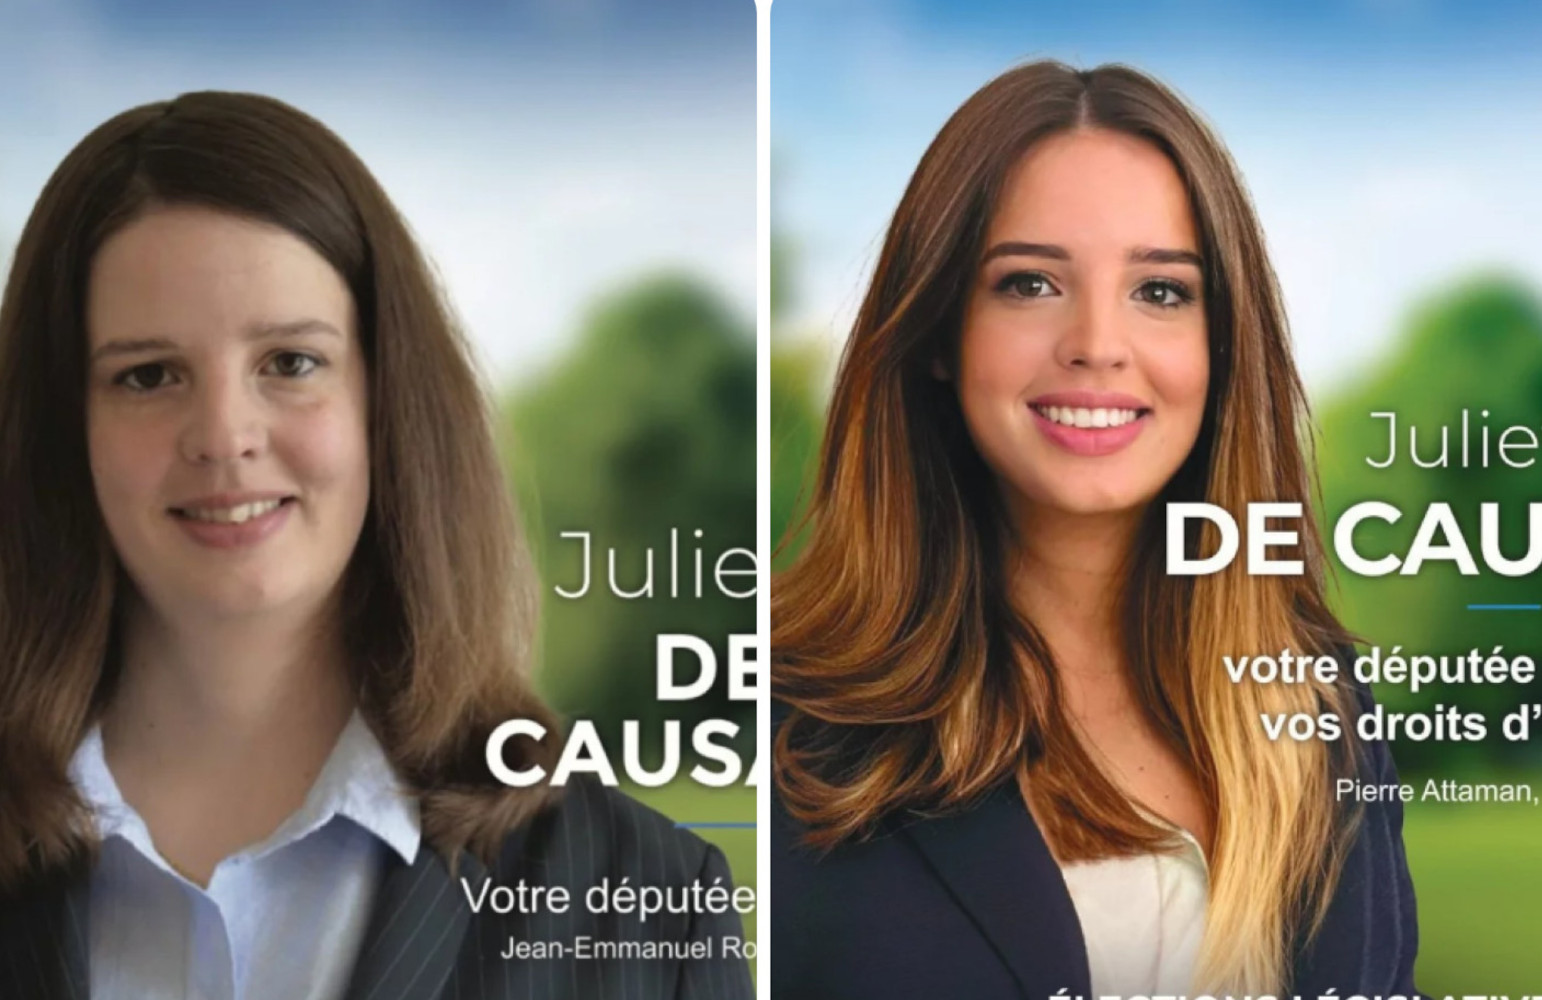 Γαλλία: Υποψήφια βουλευτής το «τερμάτισε» με το photoshop – Τι απαντά η ίδια στους κατακριτές της